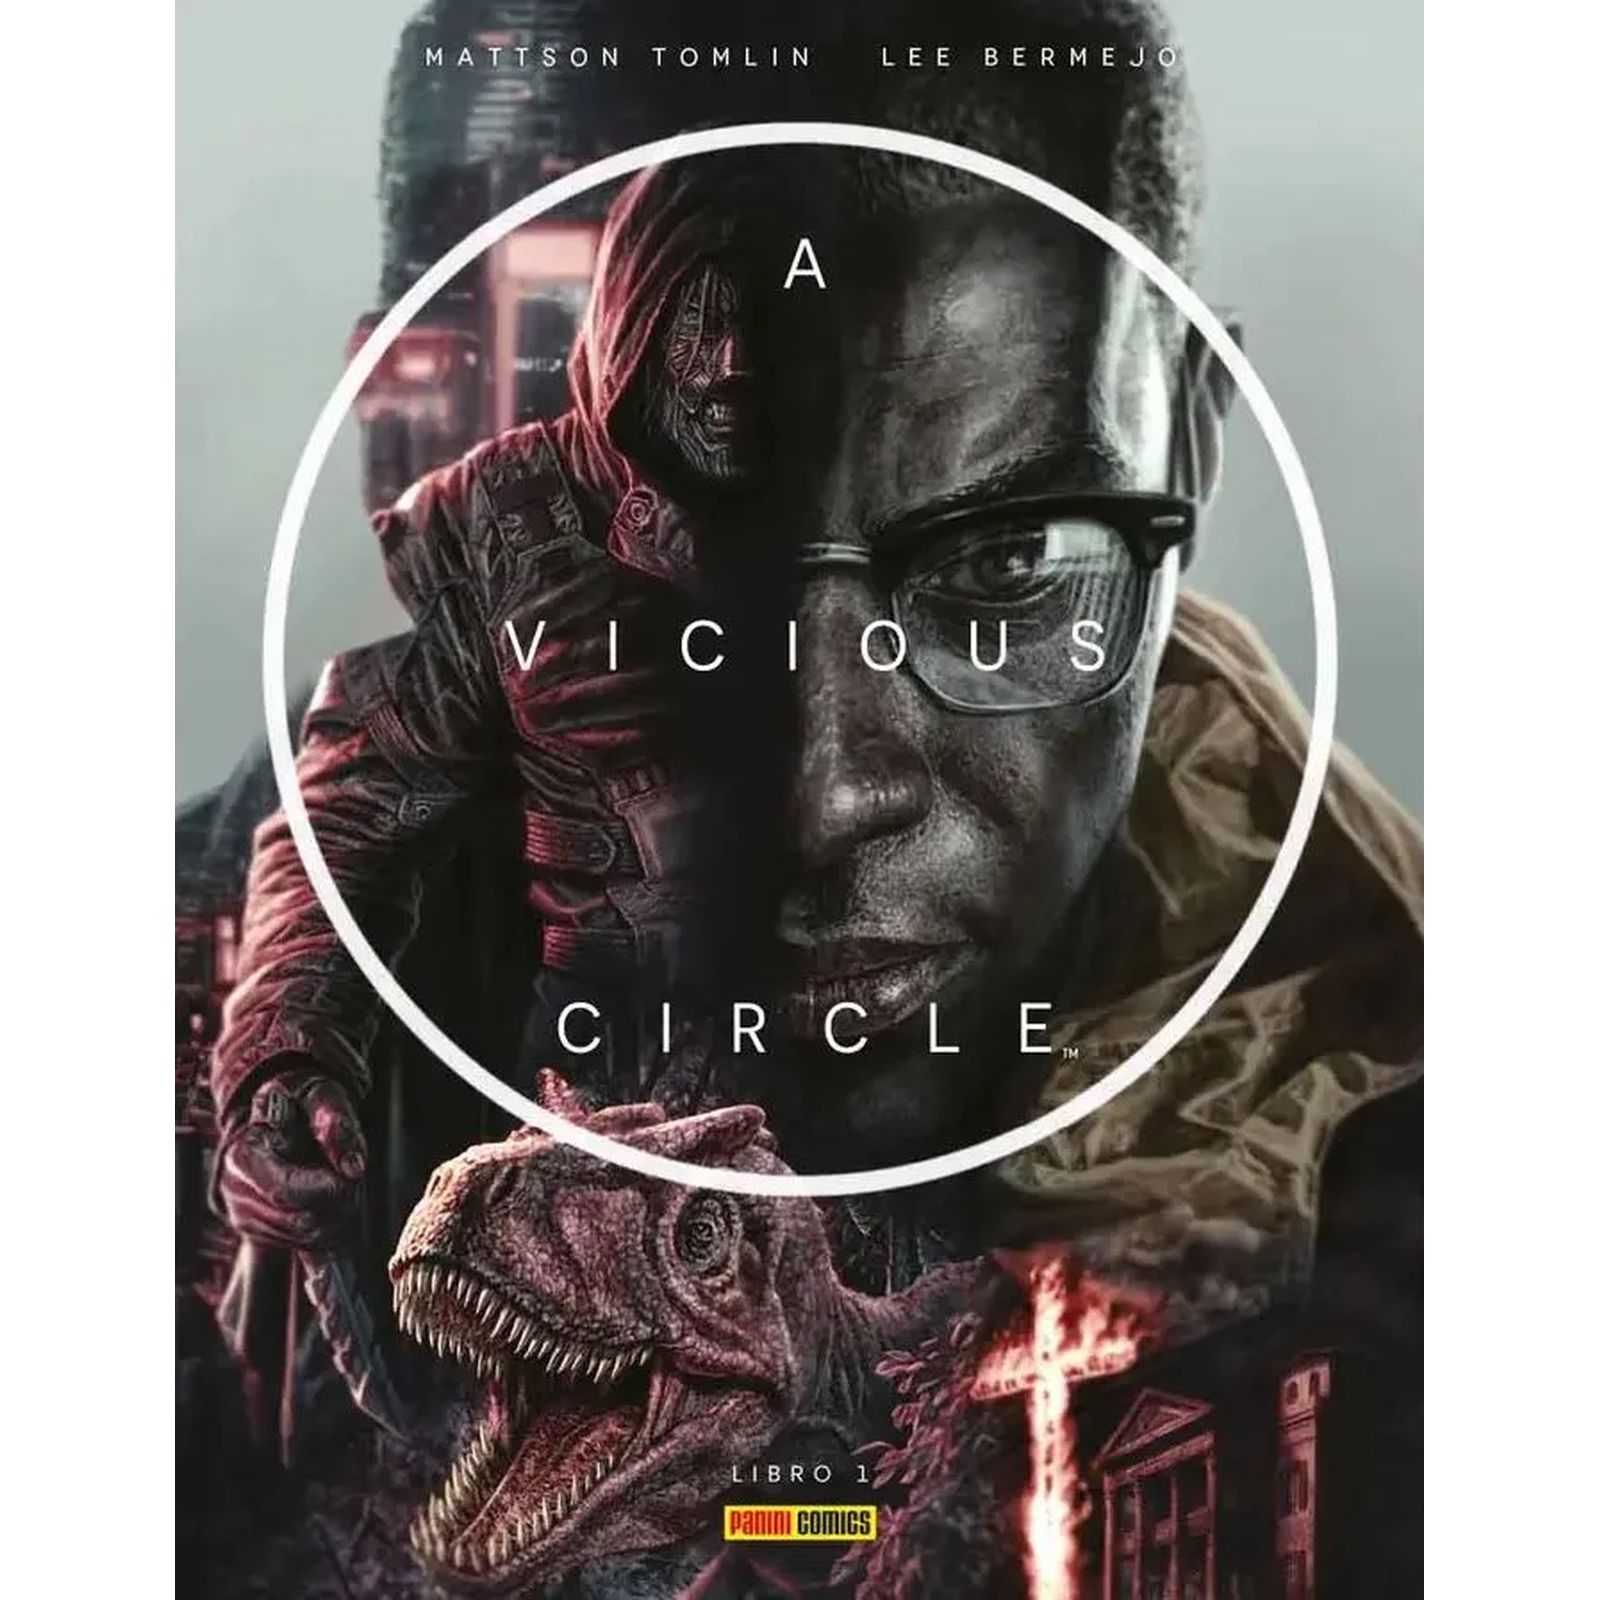 A VICIOUS CIRCLE 01